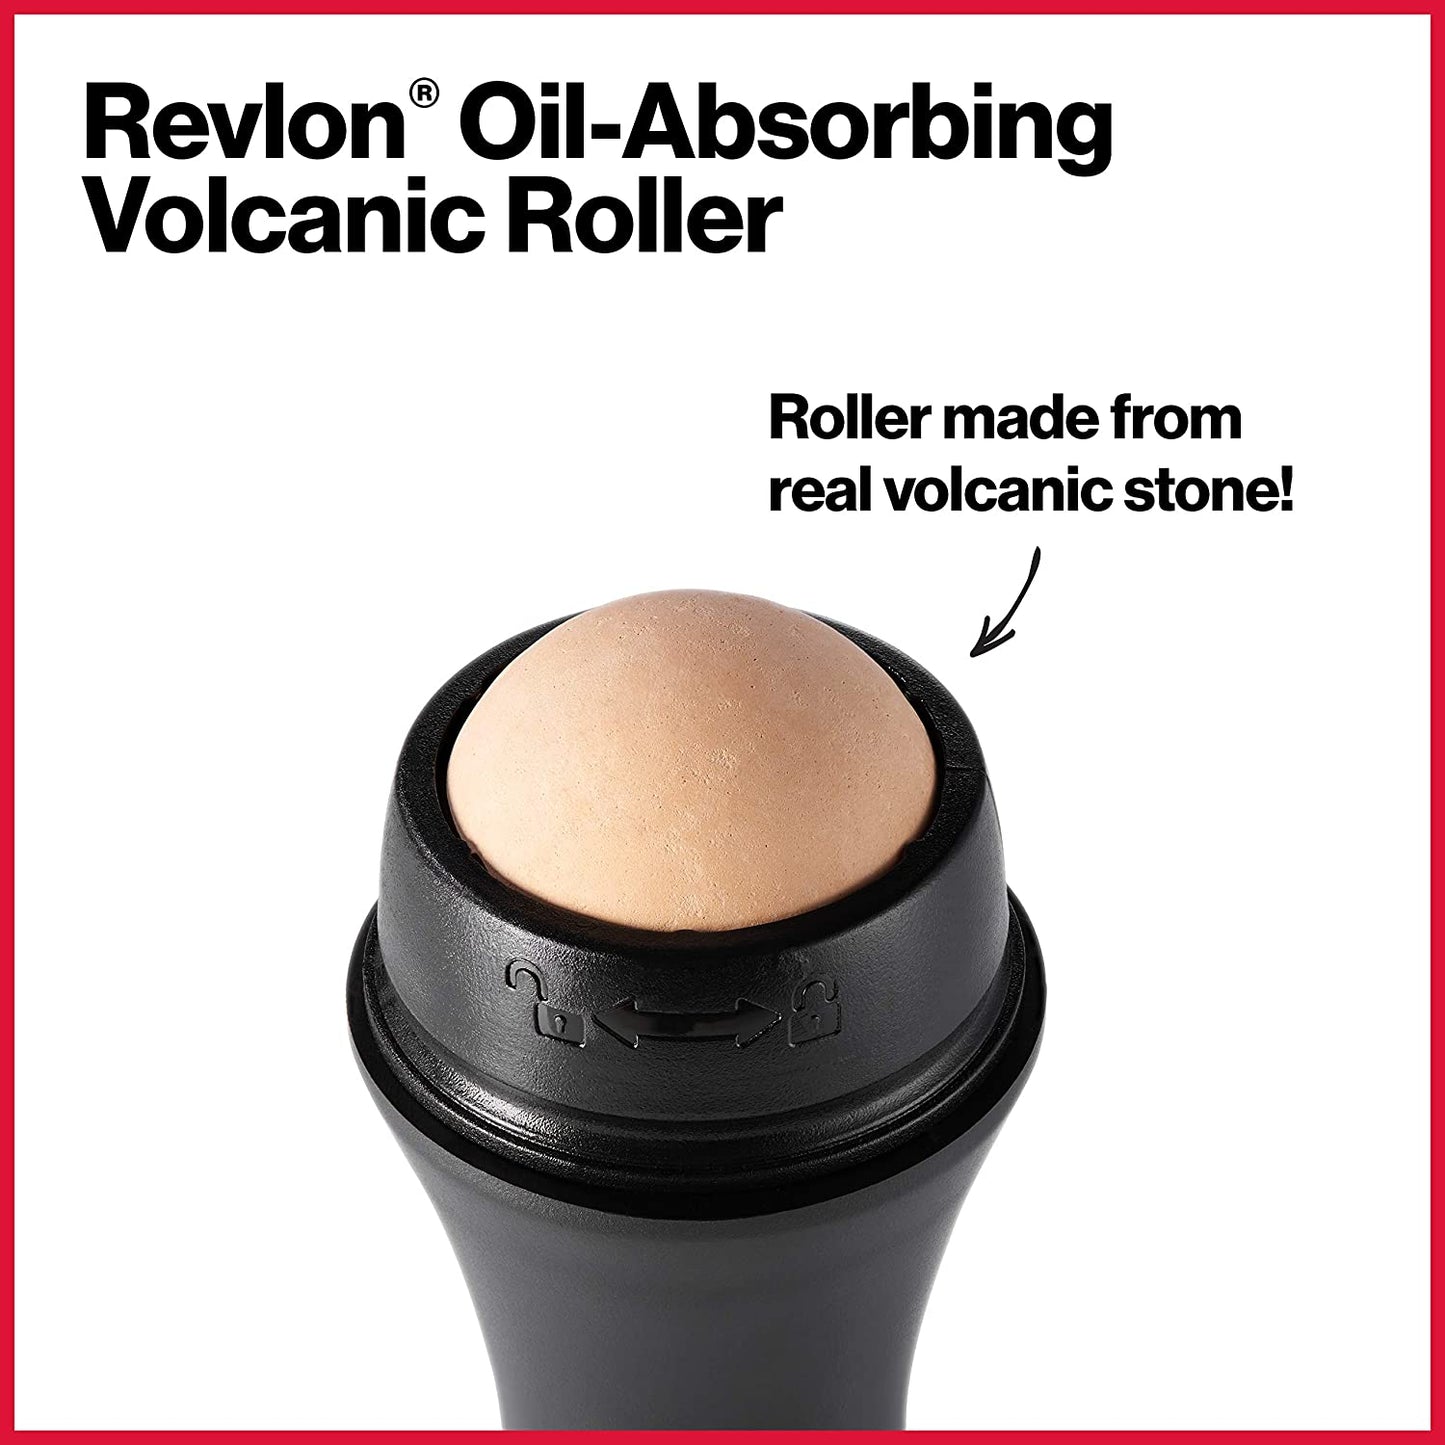 Revelon oil absorbing volcanic roller